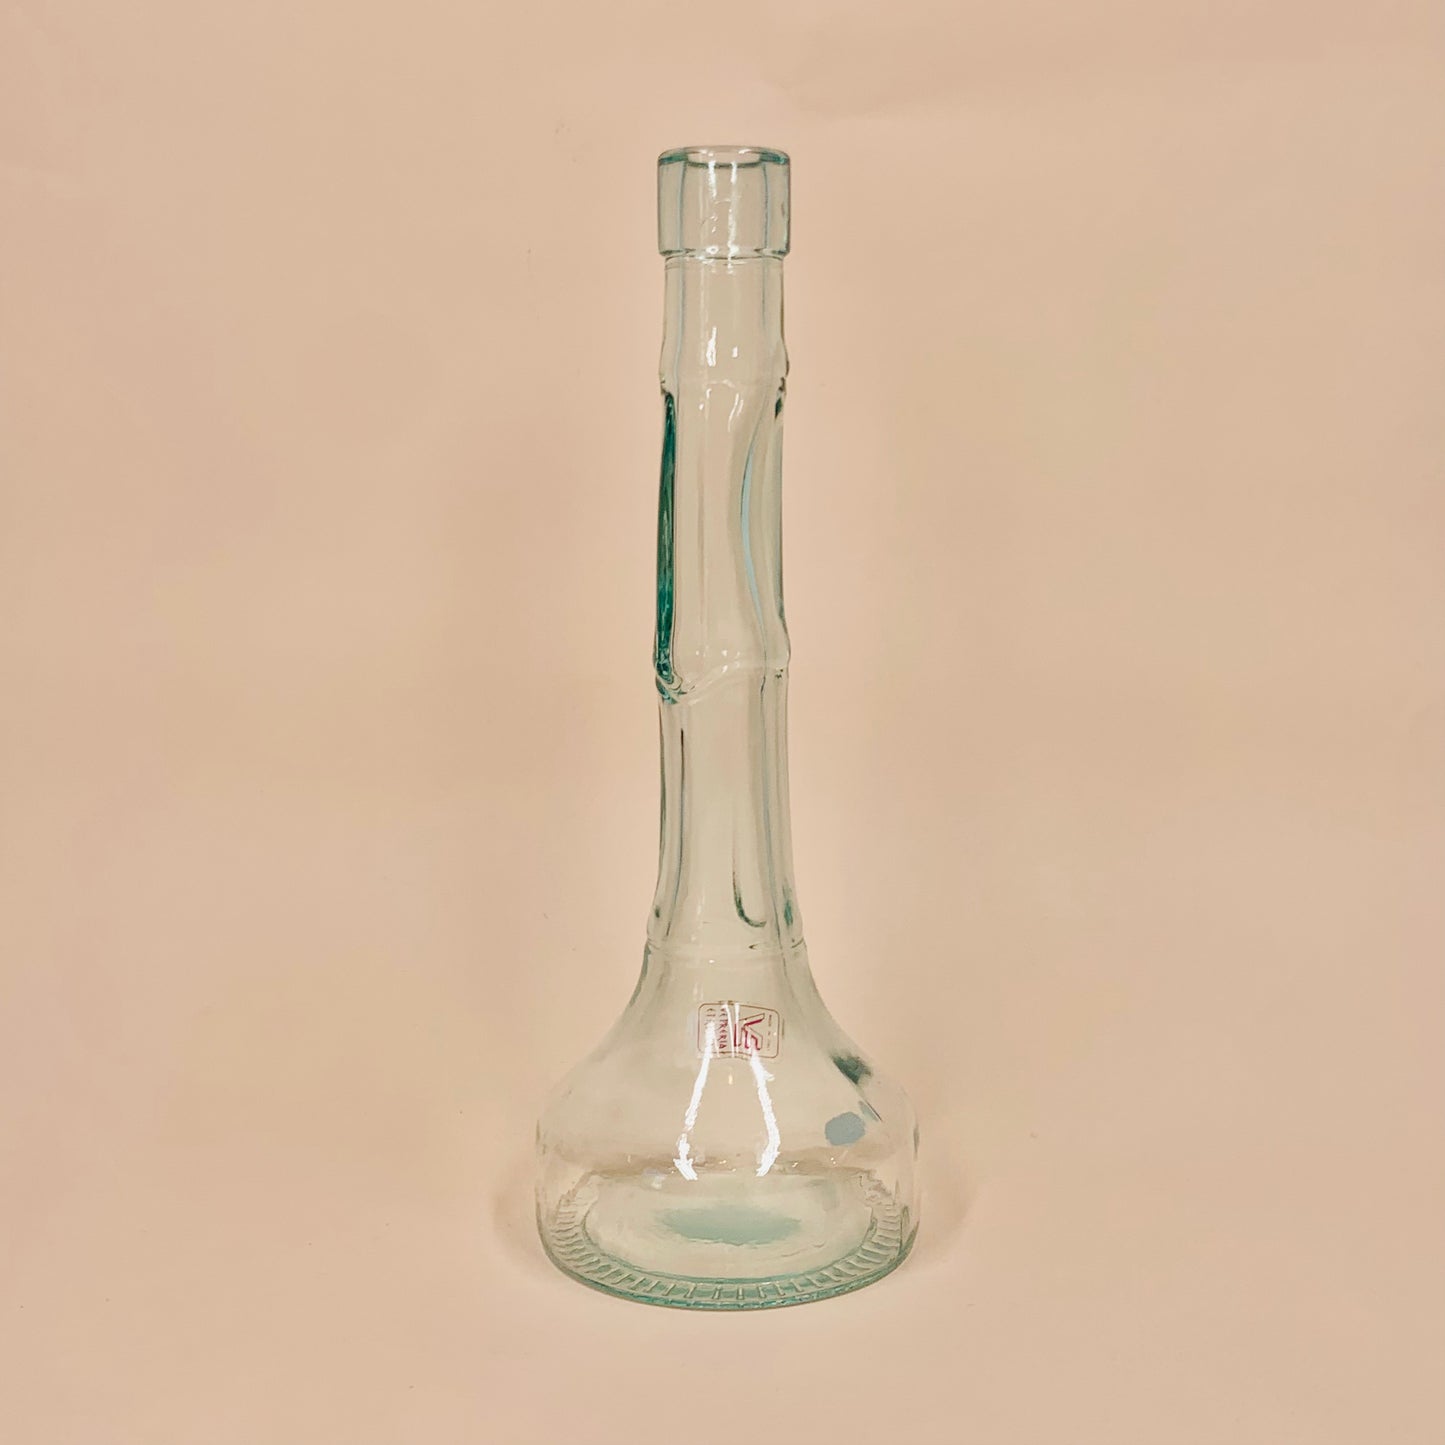 Retro Vetreria Etrussa Italian glass bottle vase with bamboo rings pattern